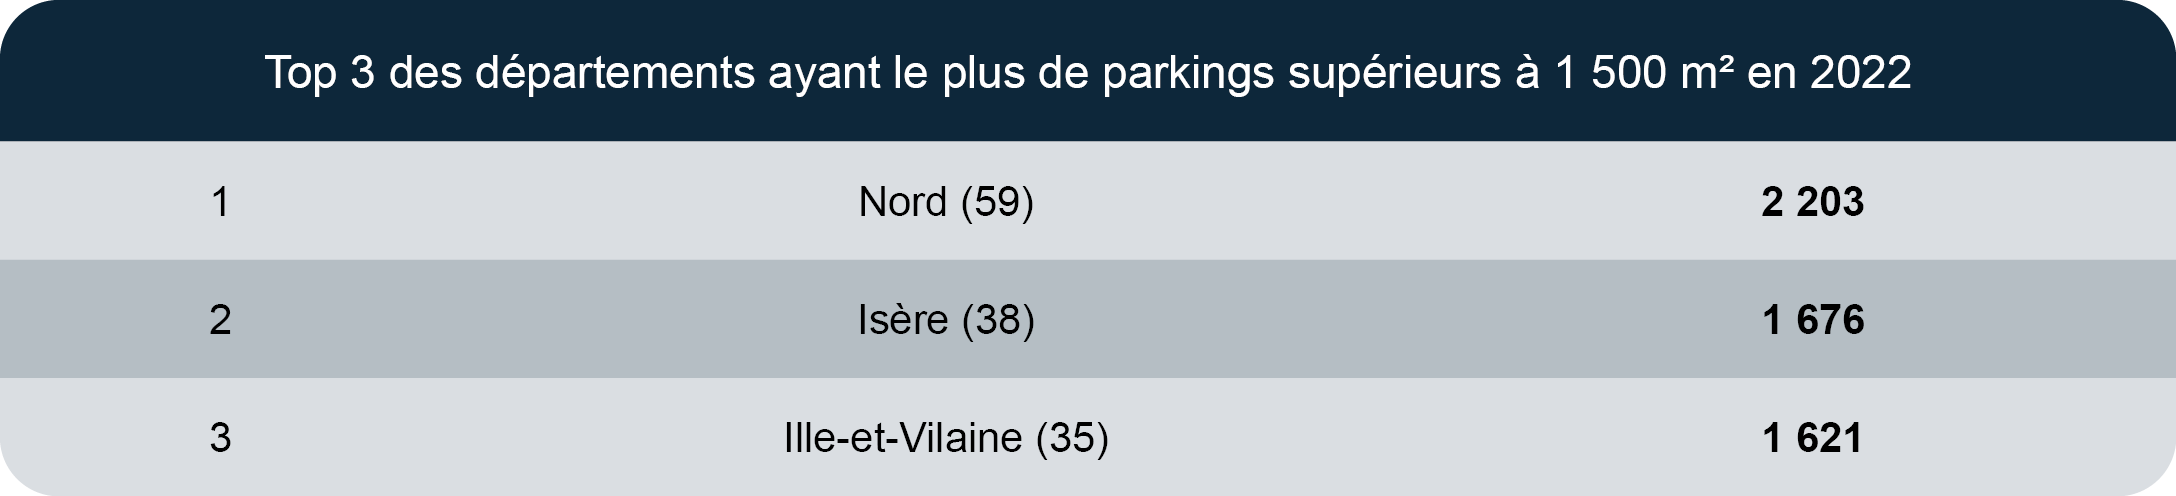 Top 3 des départements ayant le plus de parkings supérieurs à 1 500 m² en 2022